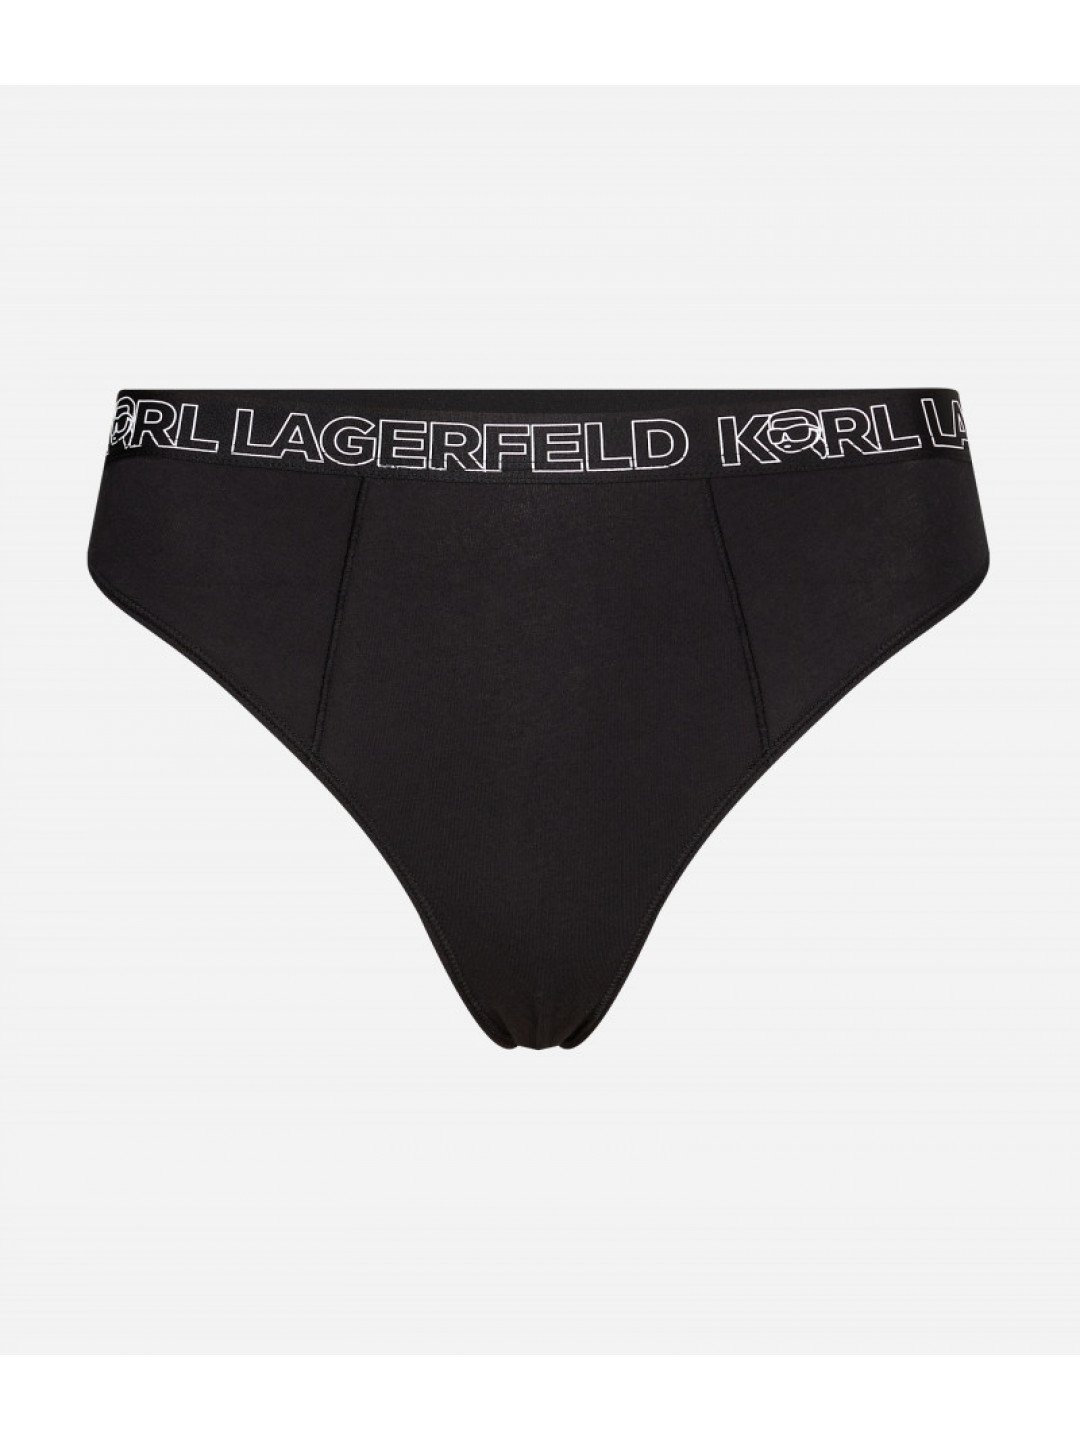 Spodní prádlo karl lagerfeld ikonik 2 0 high rise brief černá xs